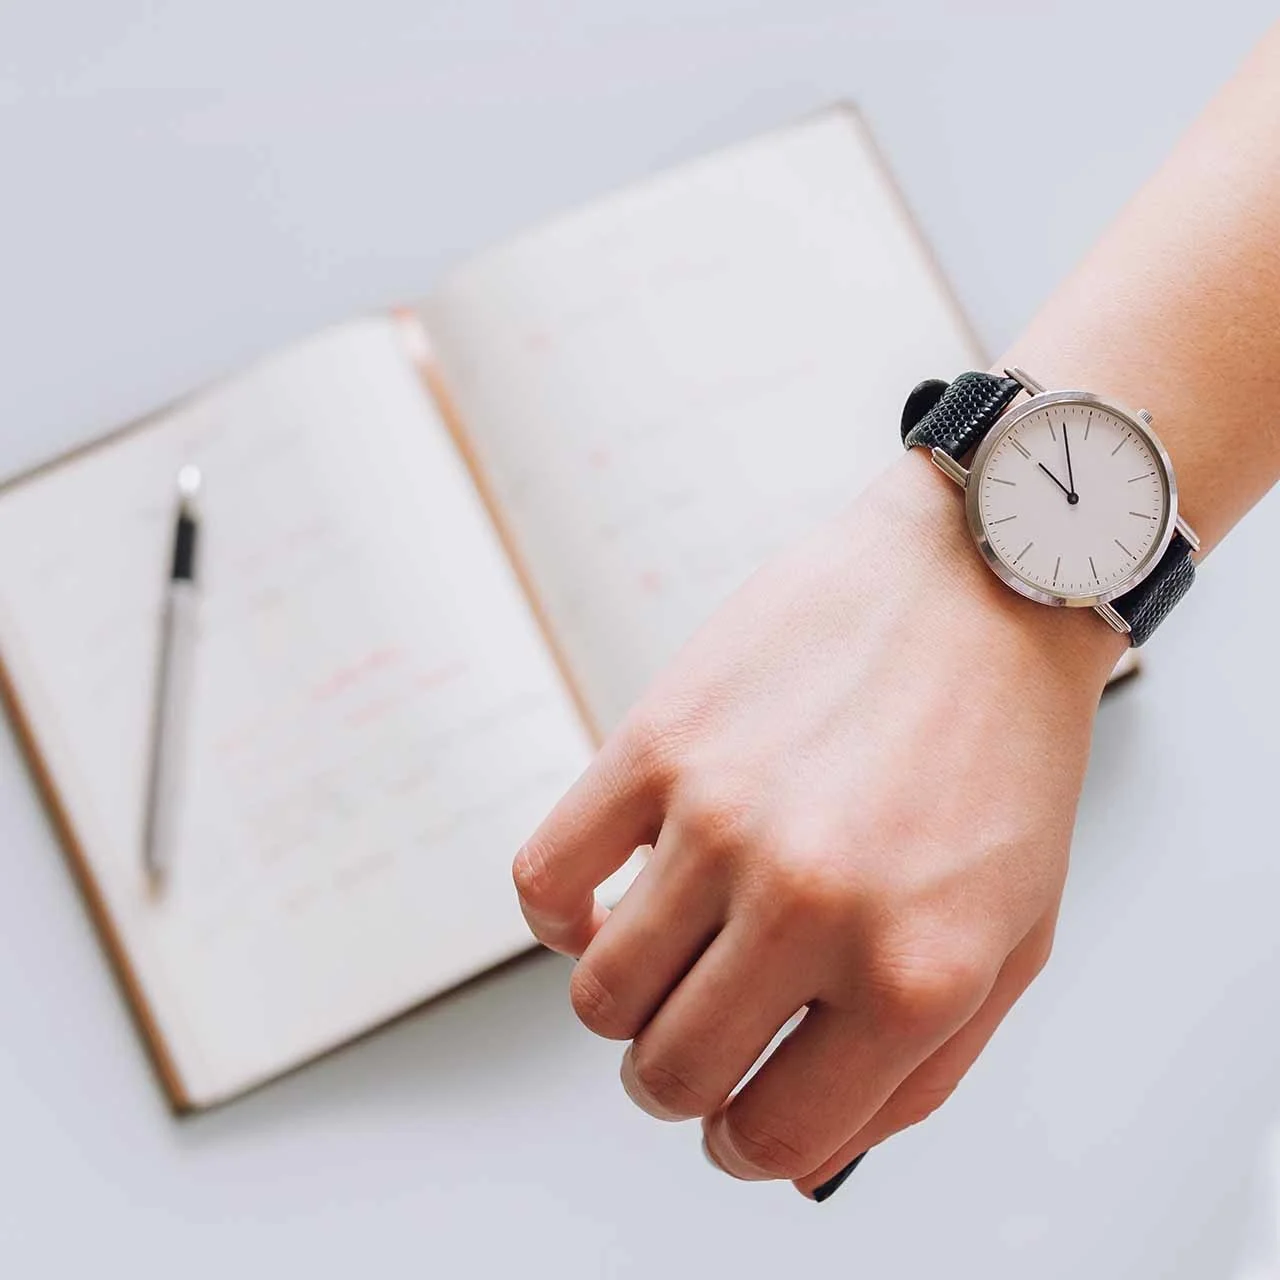 スケジュール管理をする女性の手帳と腕時計